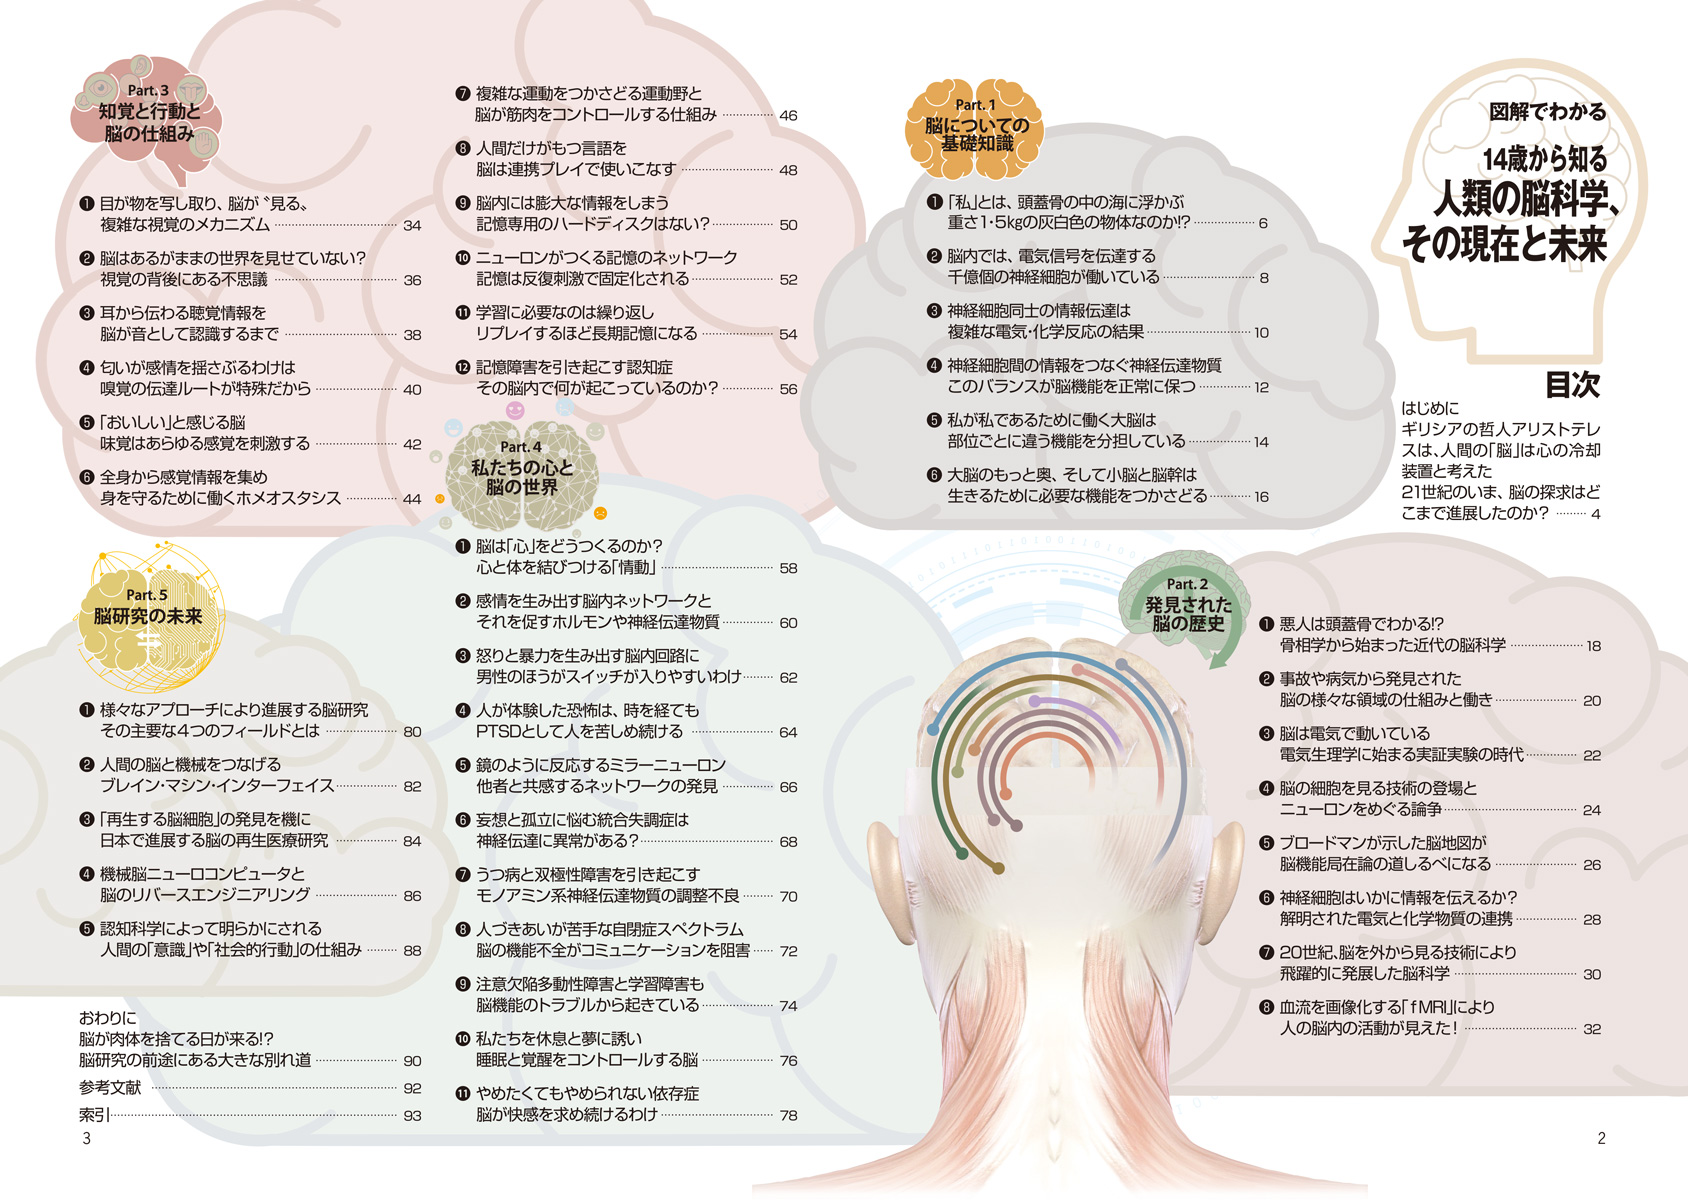 『図解でわかる 14歳から知る人類の脳科学、その現在と未来』ページサンプル